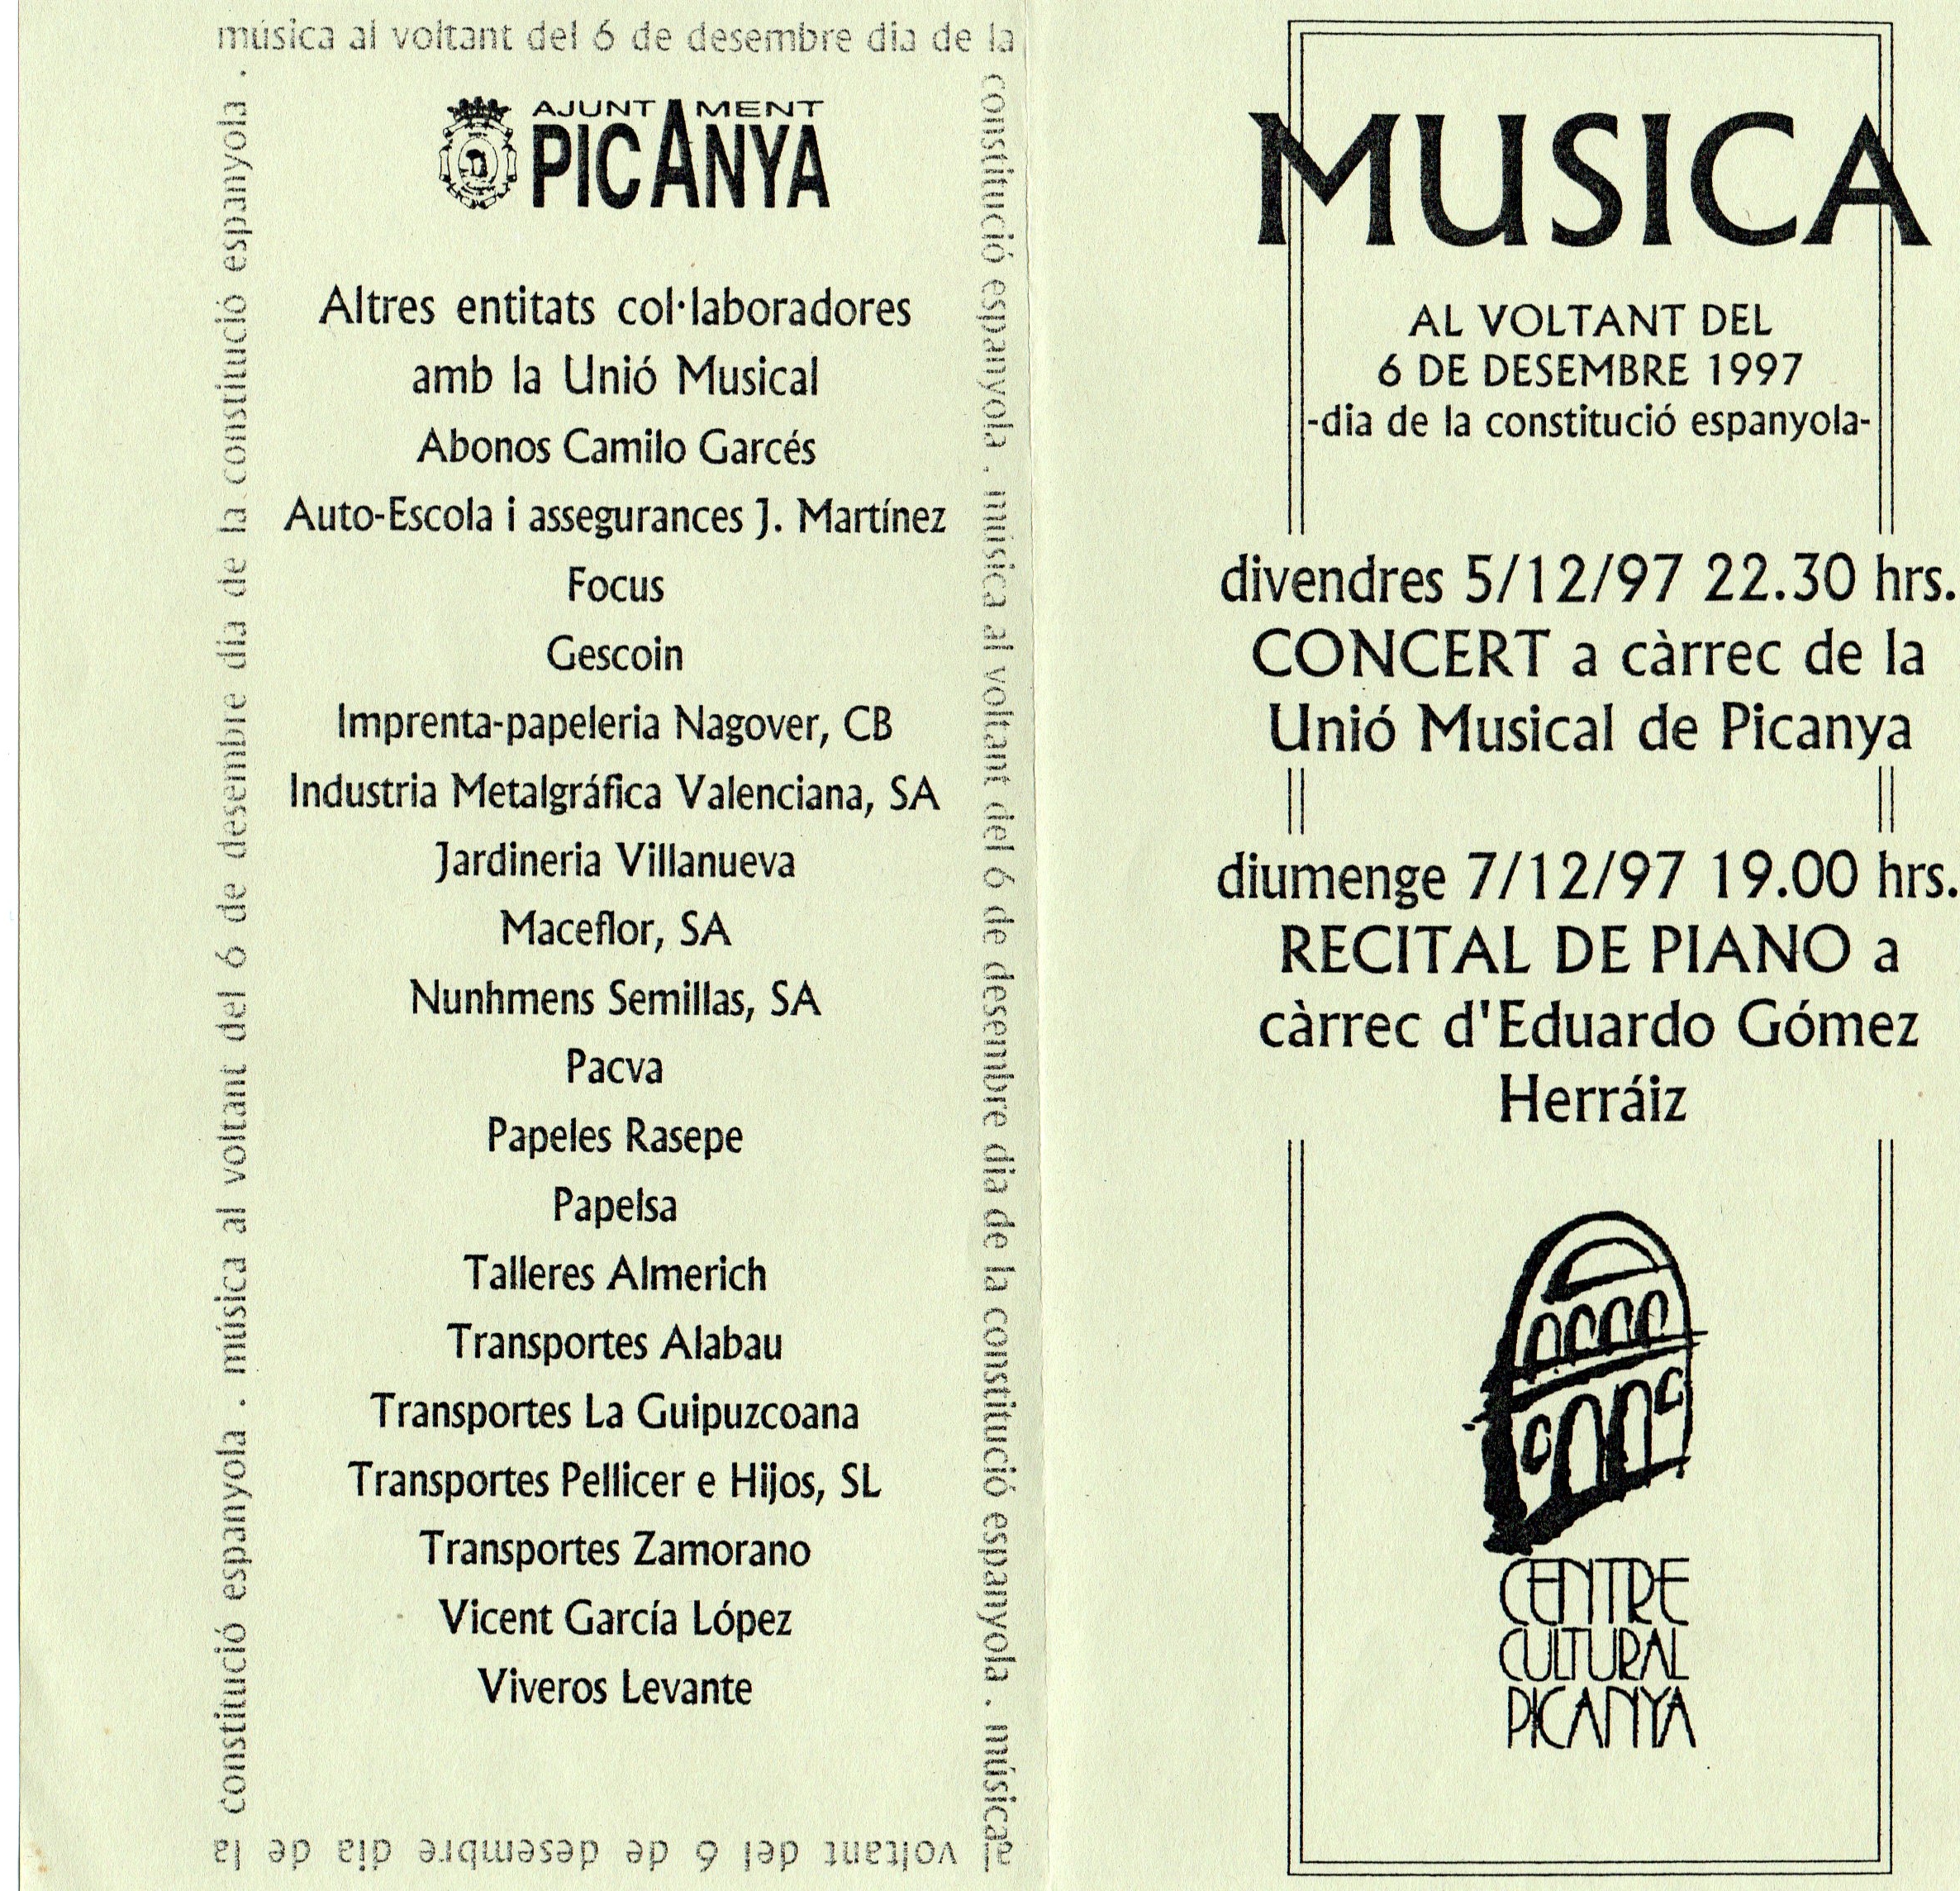 CEL-DO-A0524 - Unió Musical de Picanya